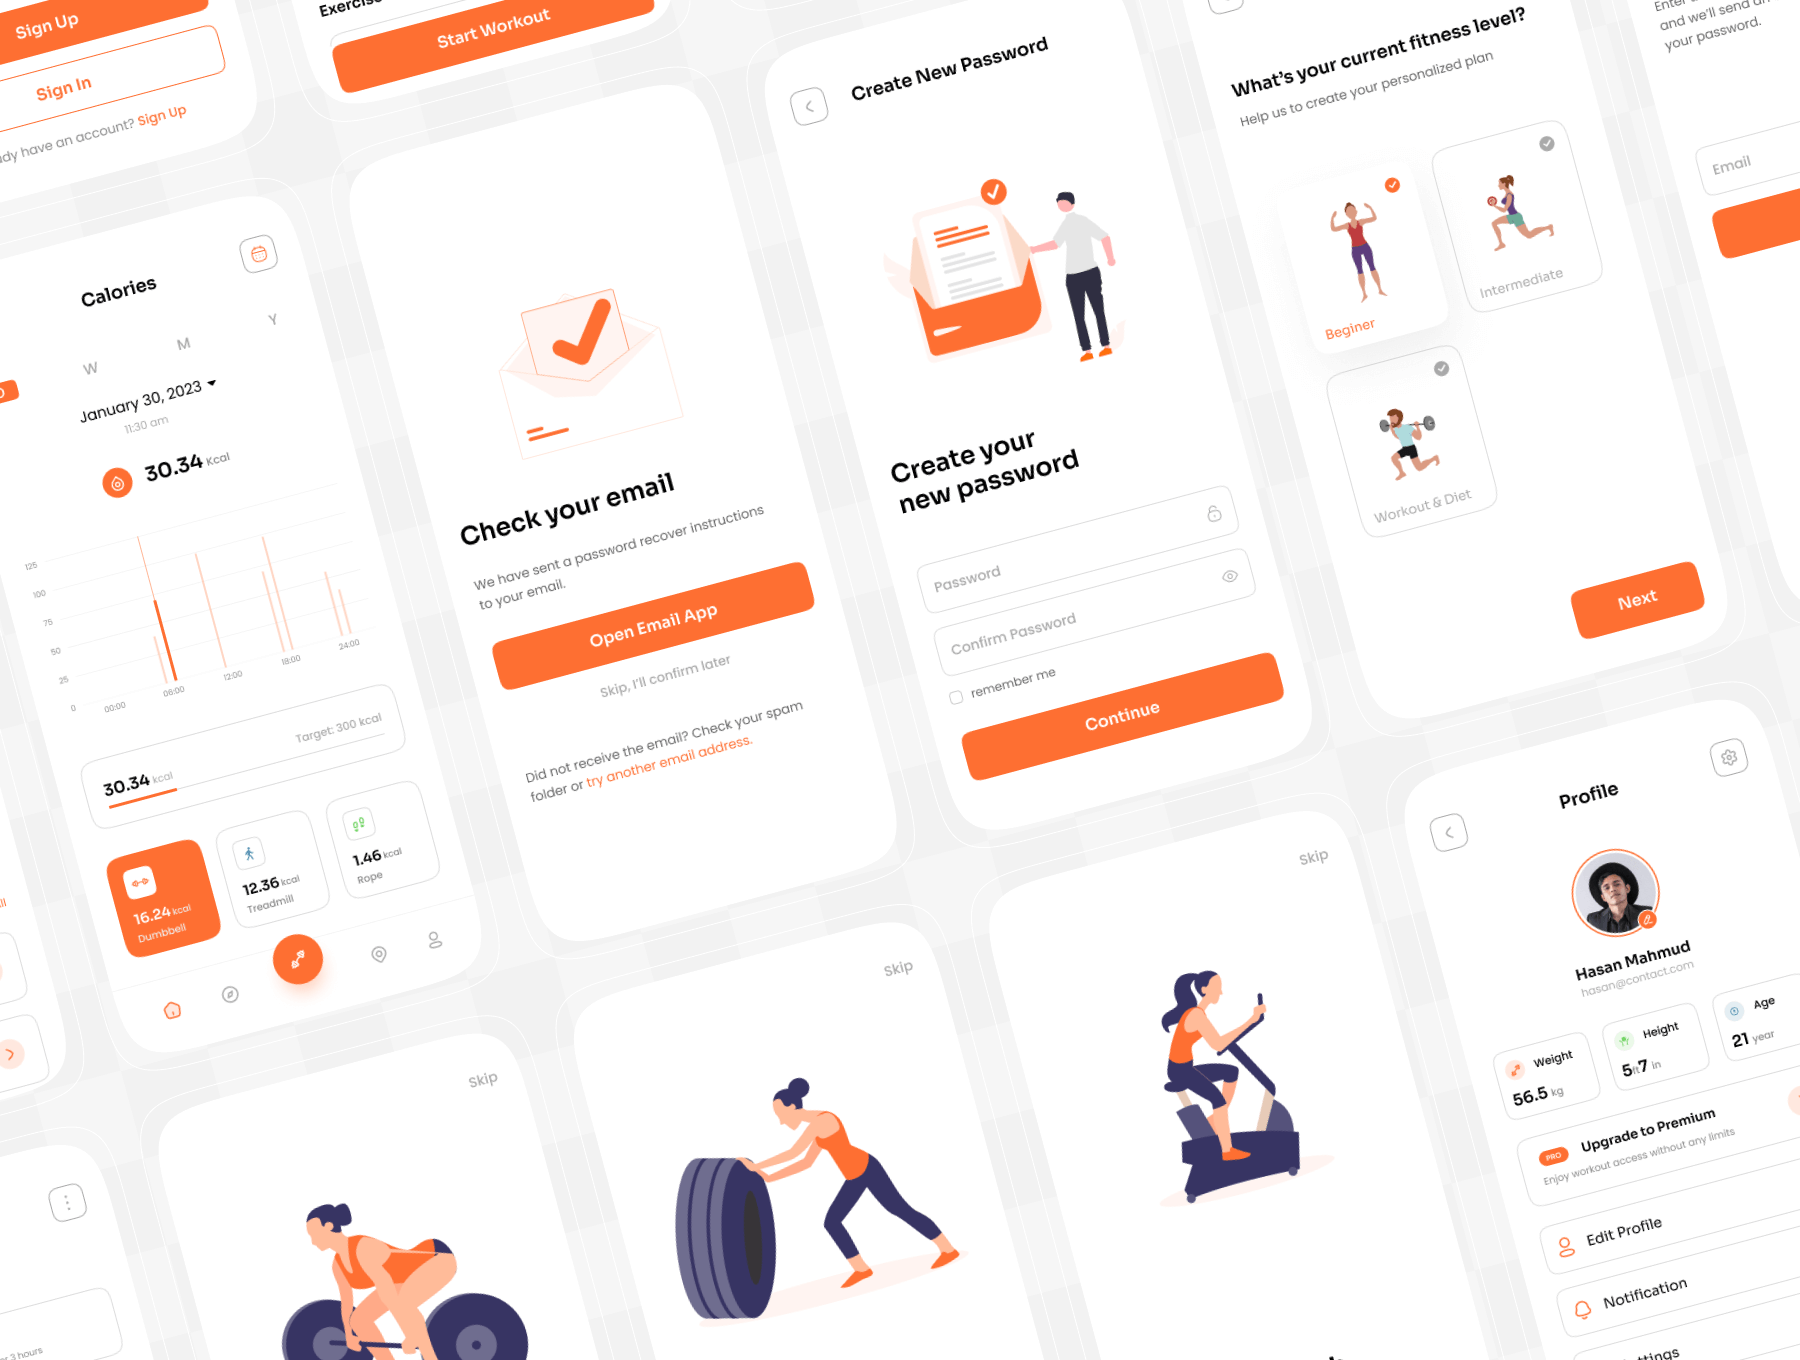 橙色主题健身手机应用UI套件模板素材Fitnex – Fitness Mobile App UI Kit插图7